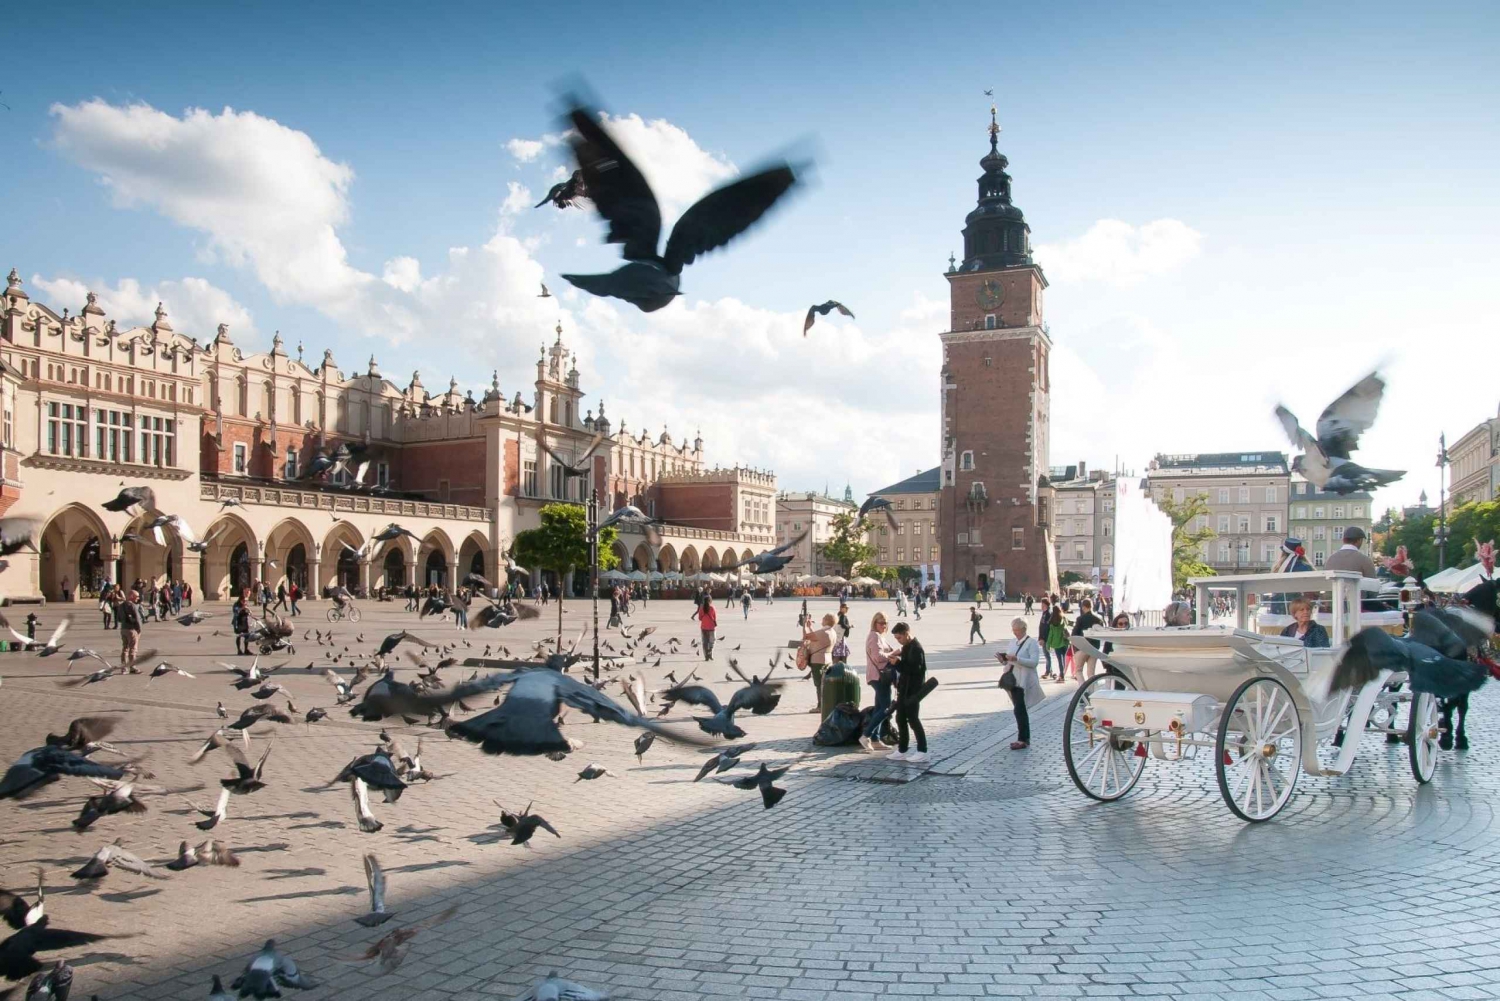 Cracóvia: excursão particular de 1 dia saindo de Varsóvia